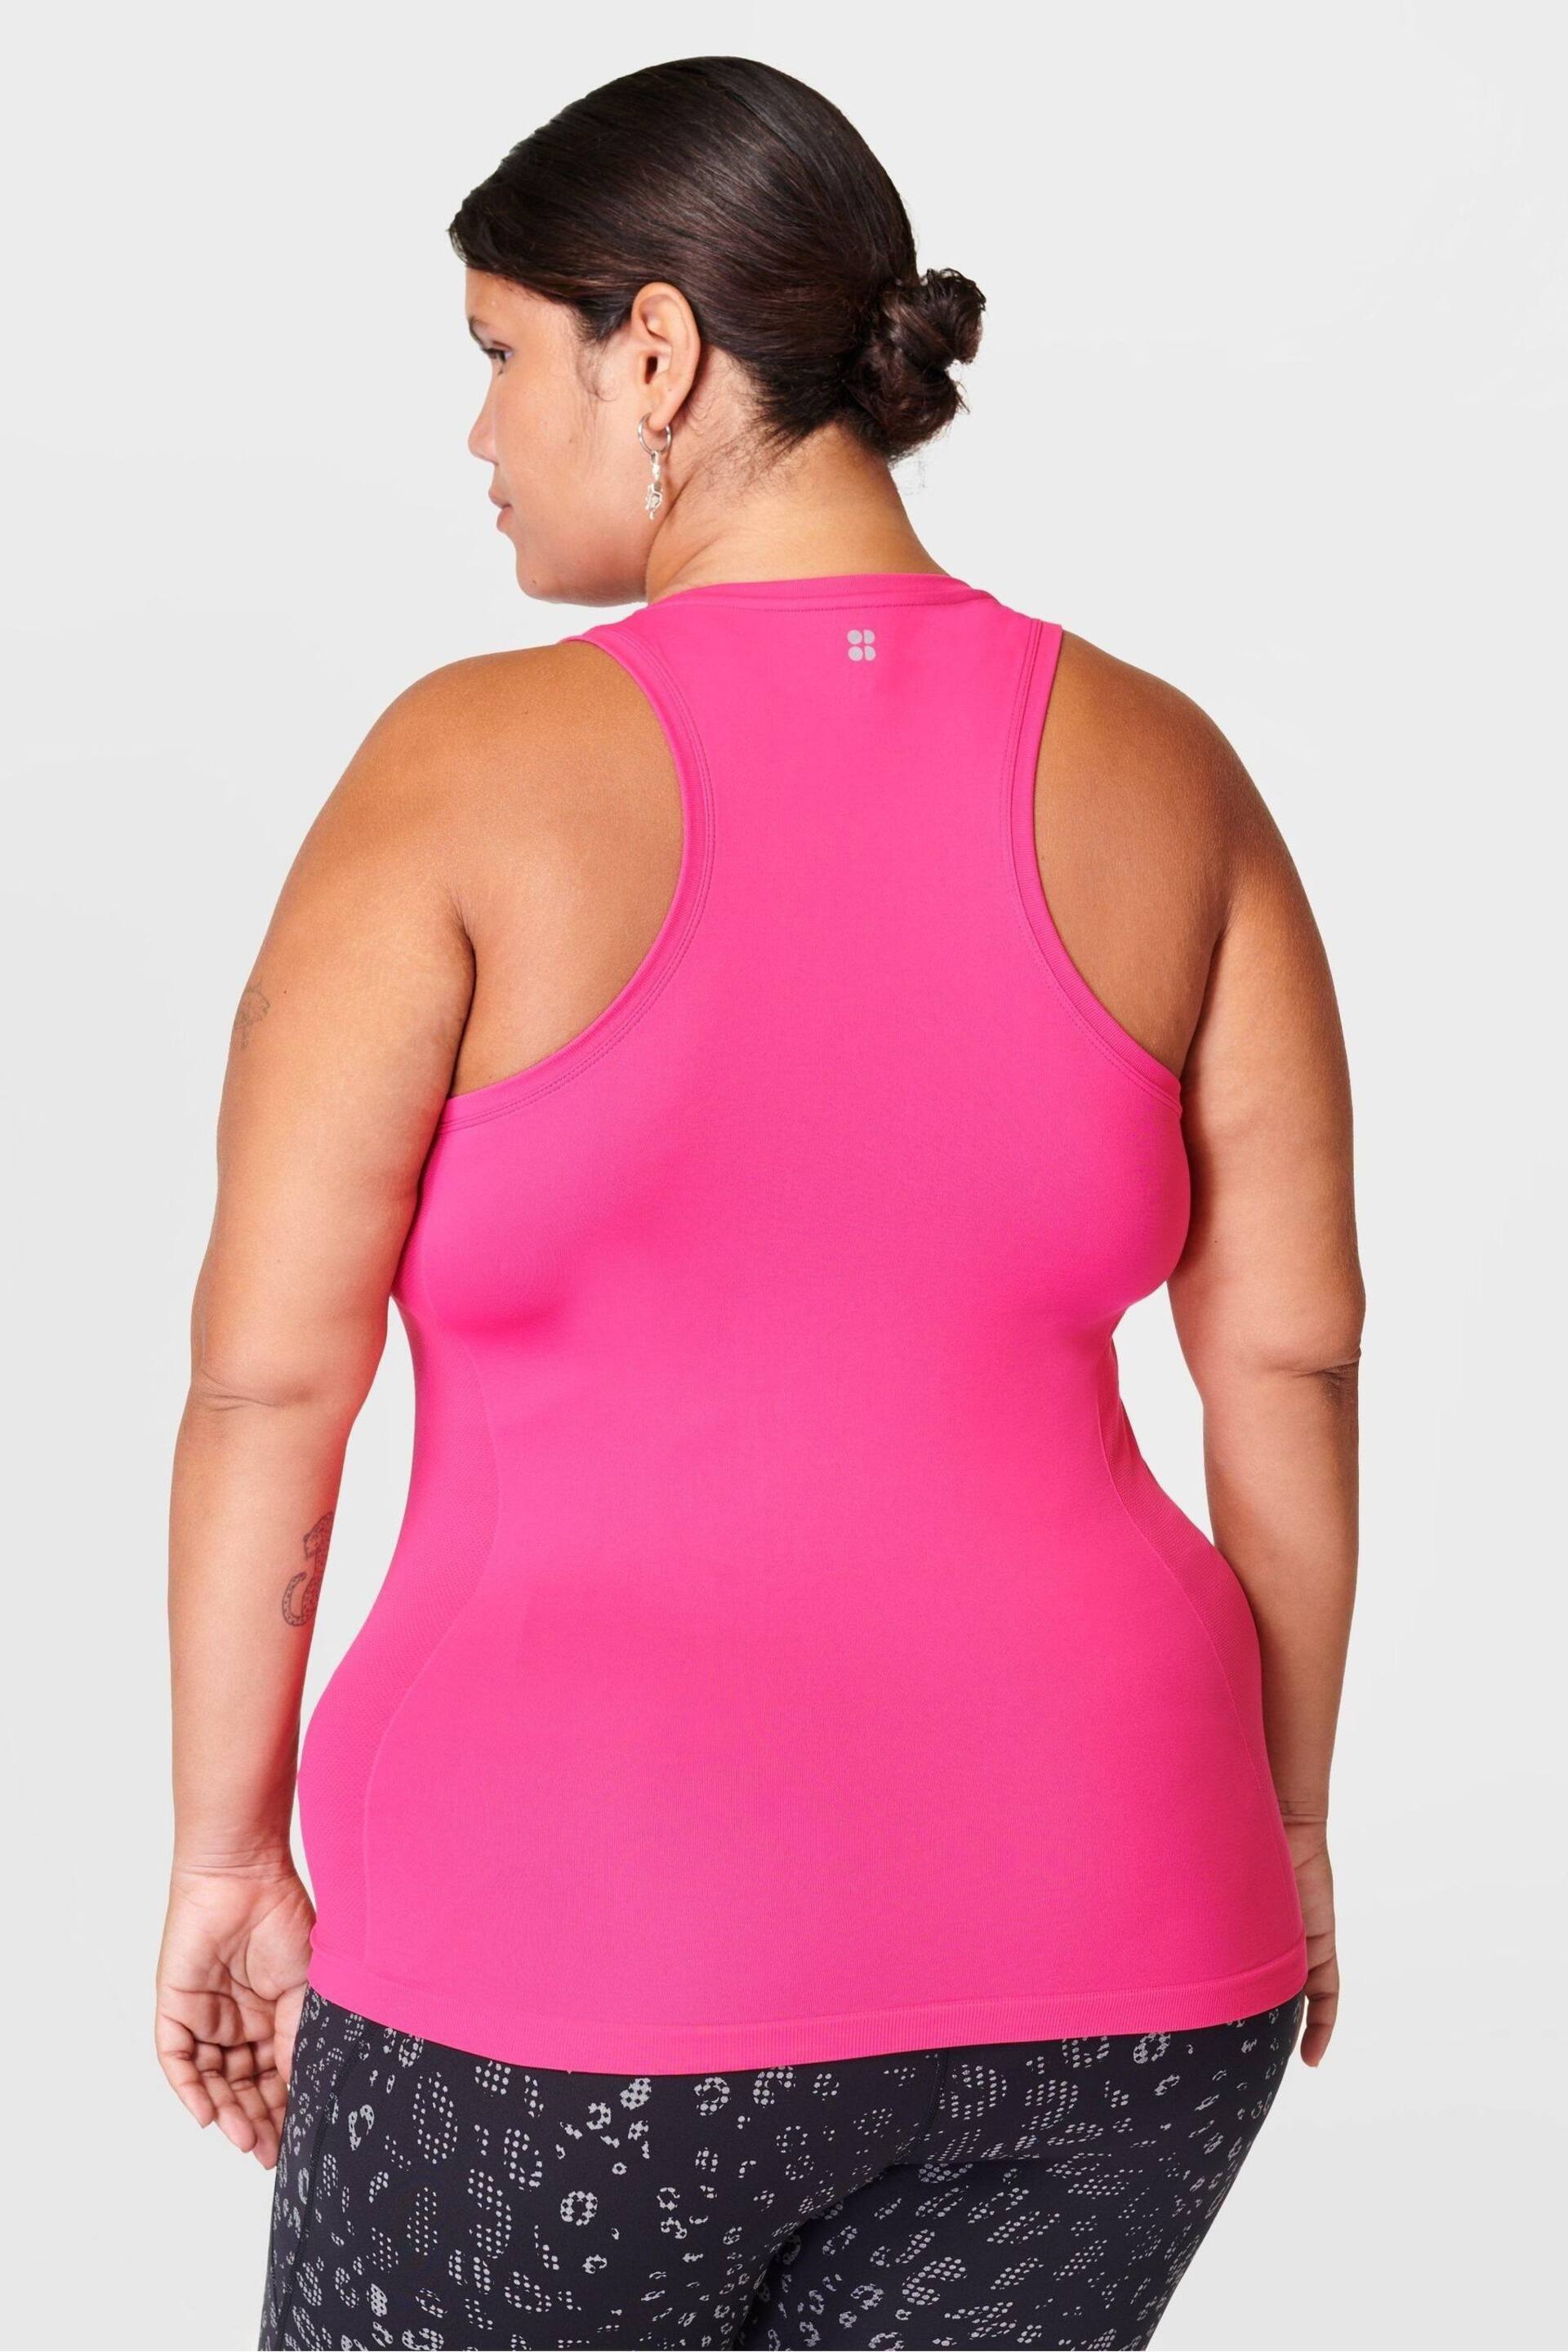 Sweaty Betty Punk Pink Athlete Seamless Workout Tank Top - Image 2 of 5